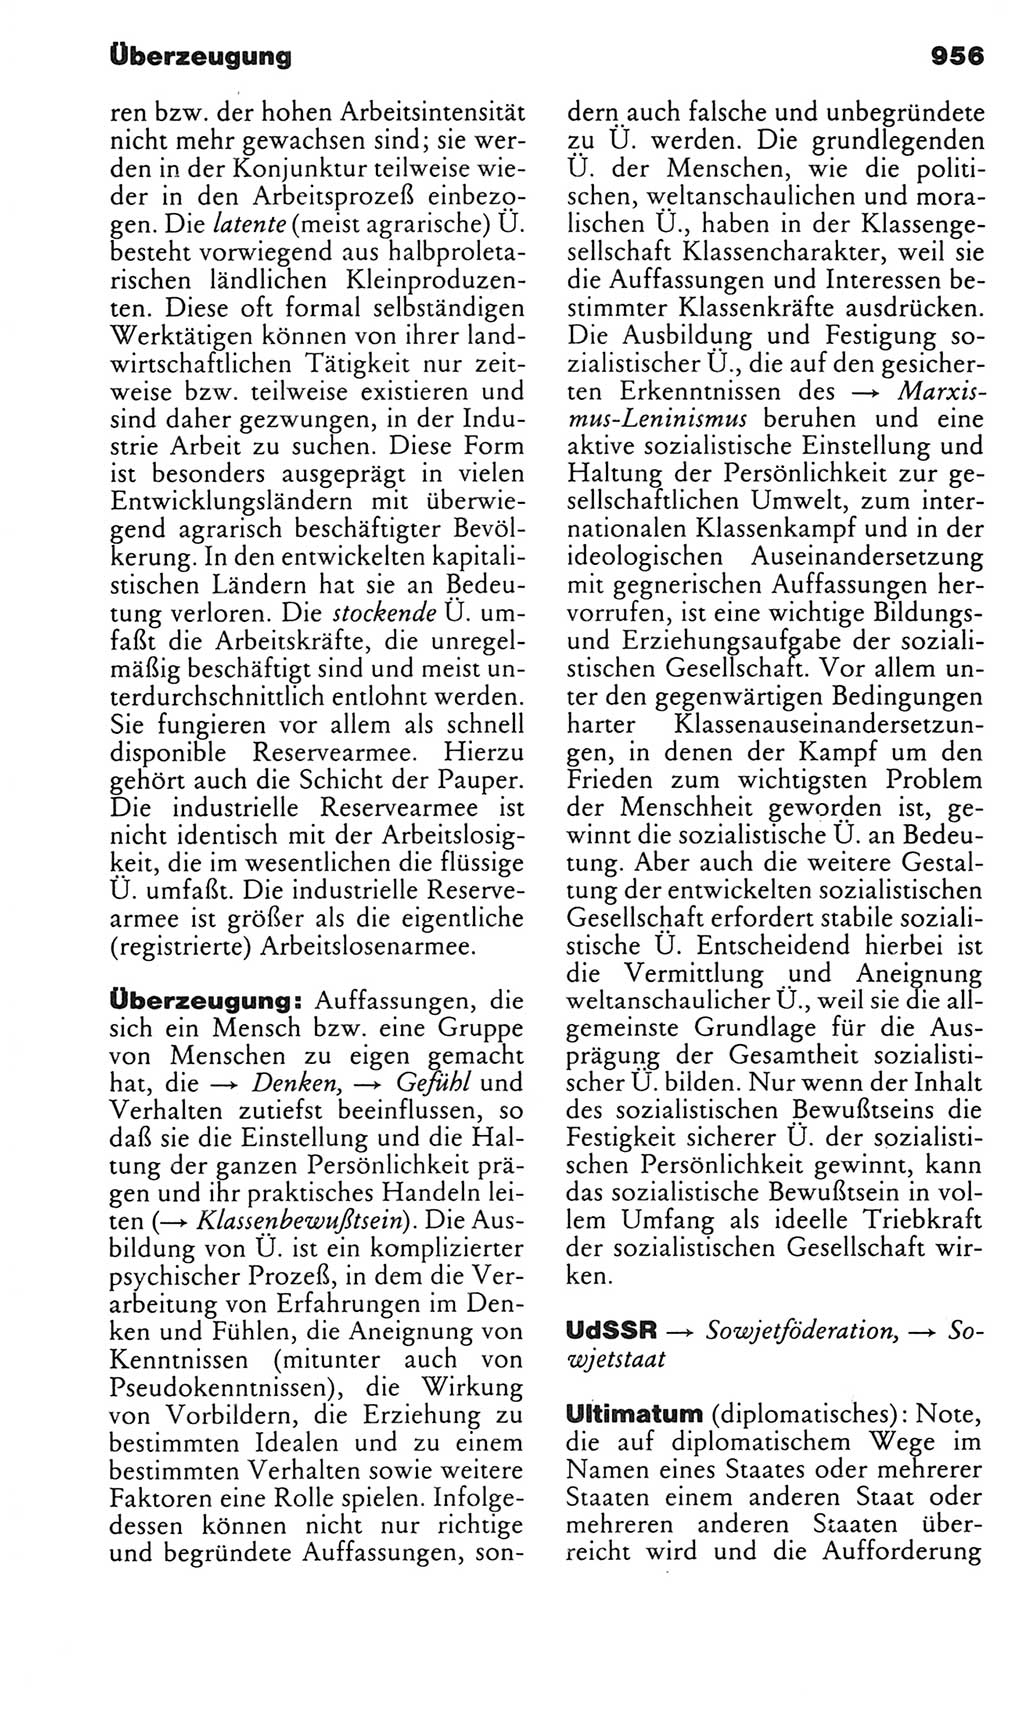 Kleines politisches Wörterbuch [Deutsche Demokratische Republik (DDR)] 1983, Seite 956 (Kl. pol. Wb. DDR 1983, S. 956)